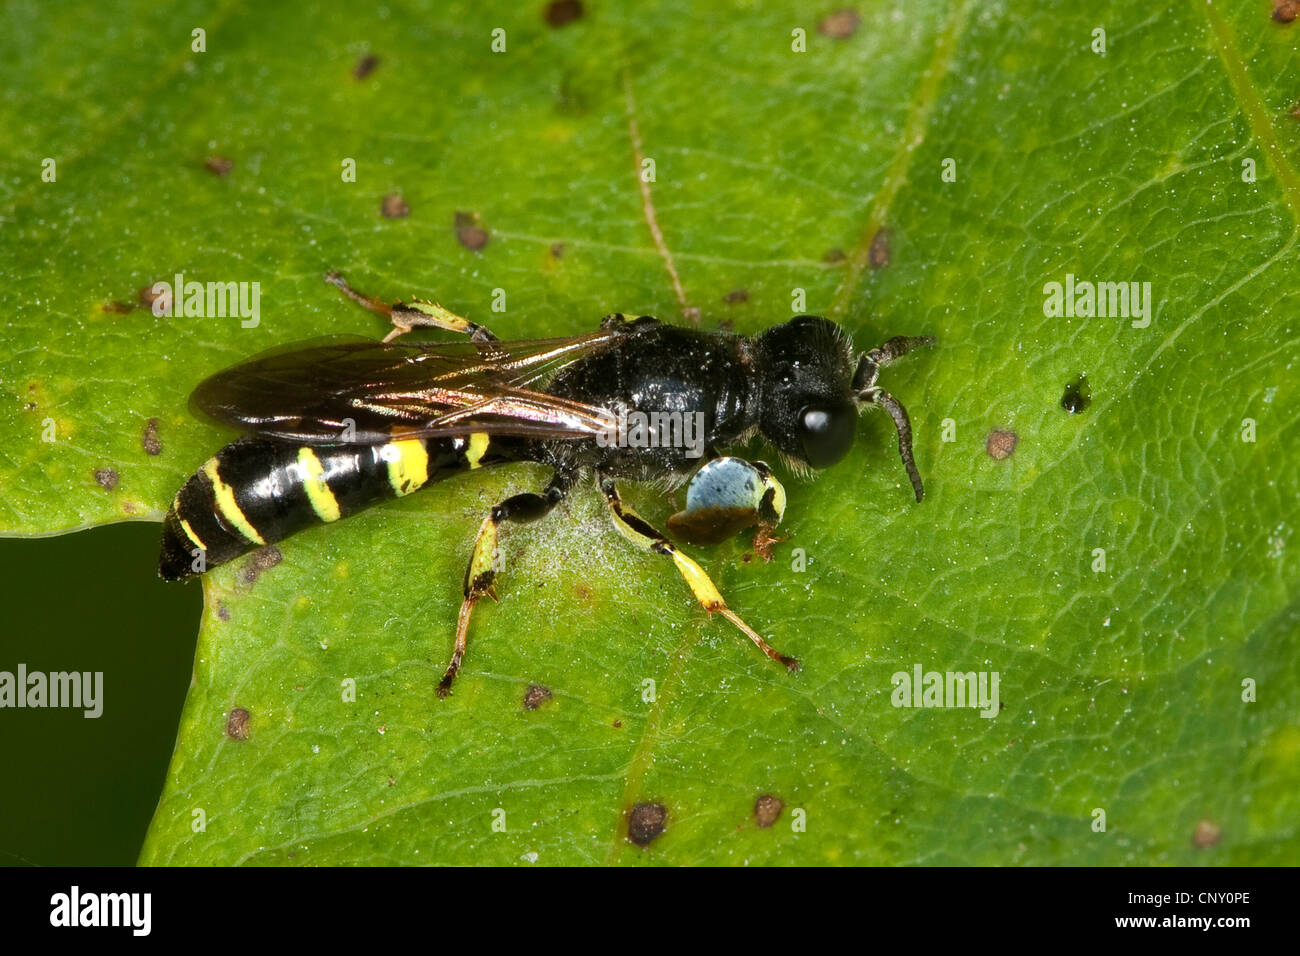 Digger wasp, au corps allongé (Crabro peltarius), homme, Allemagne Banque D'Images